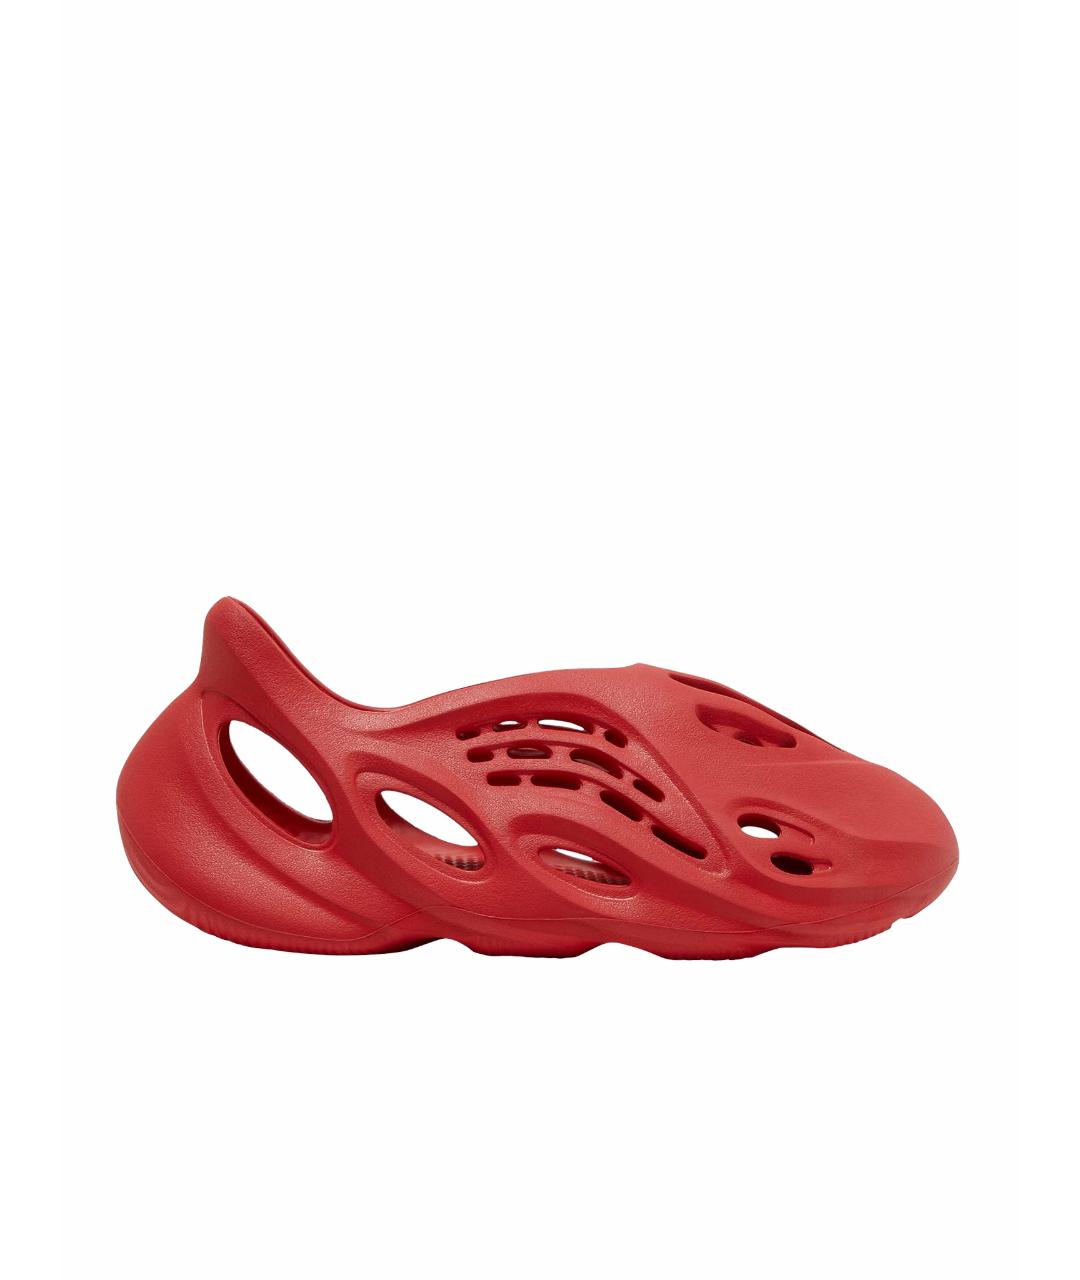 ADIDAS YEEZY Красные резиновые сандалии, фото 1